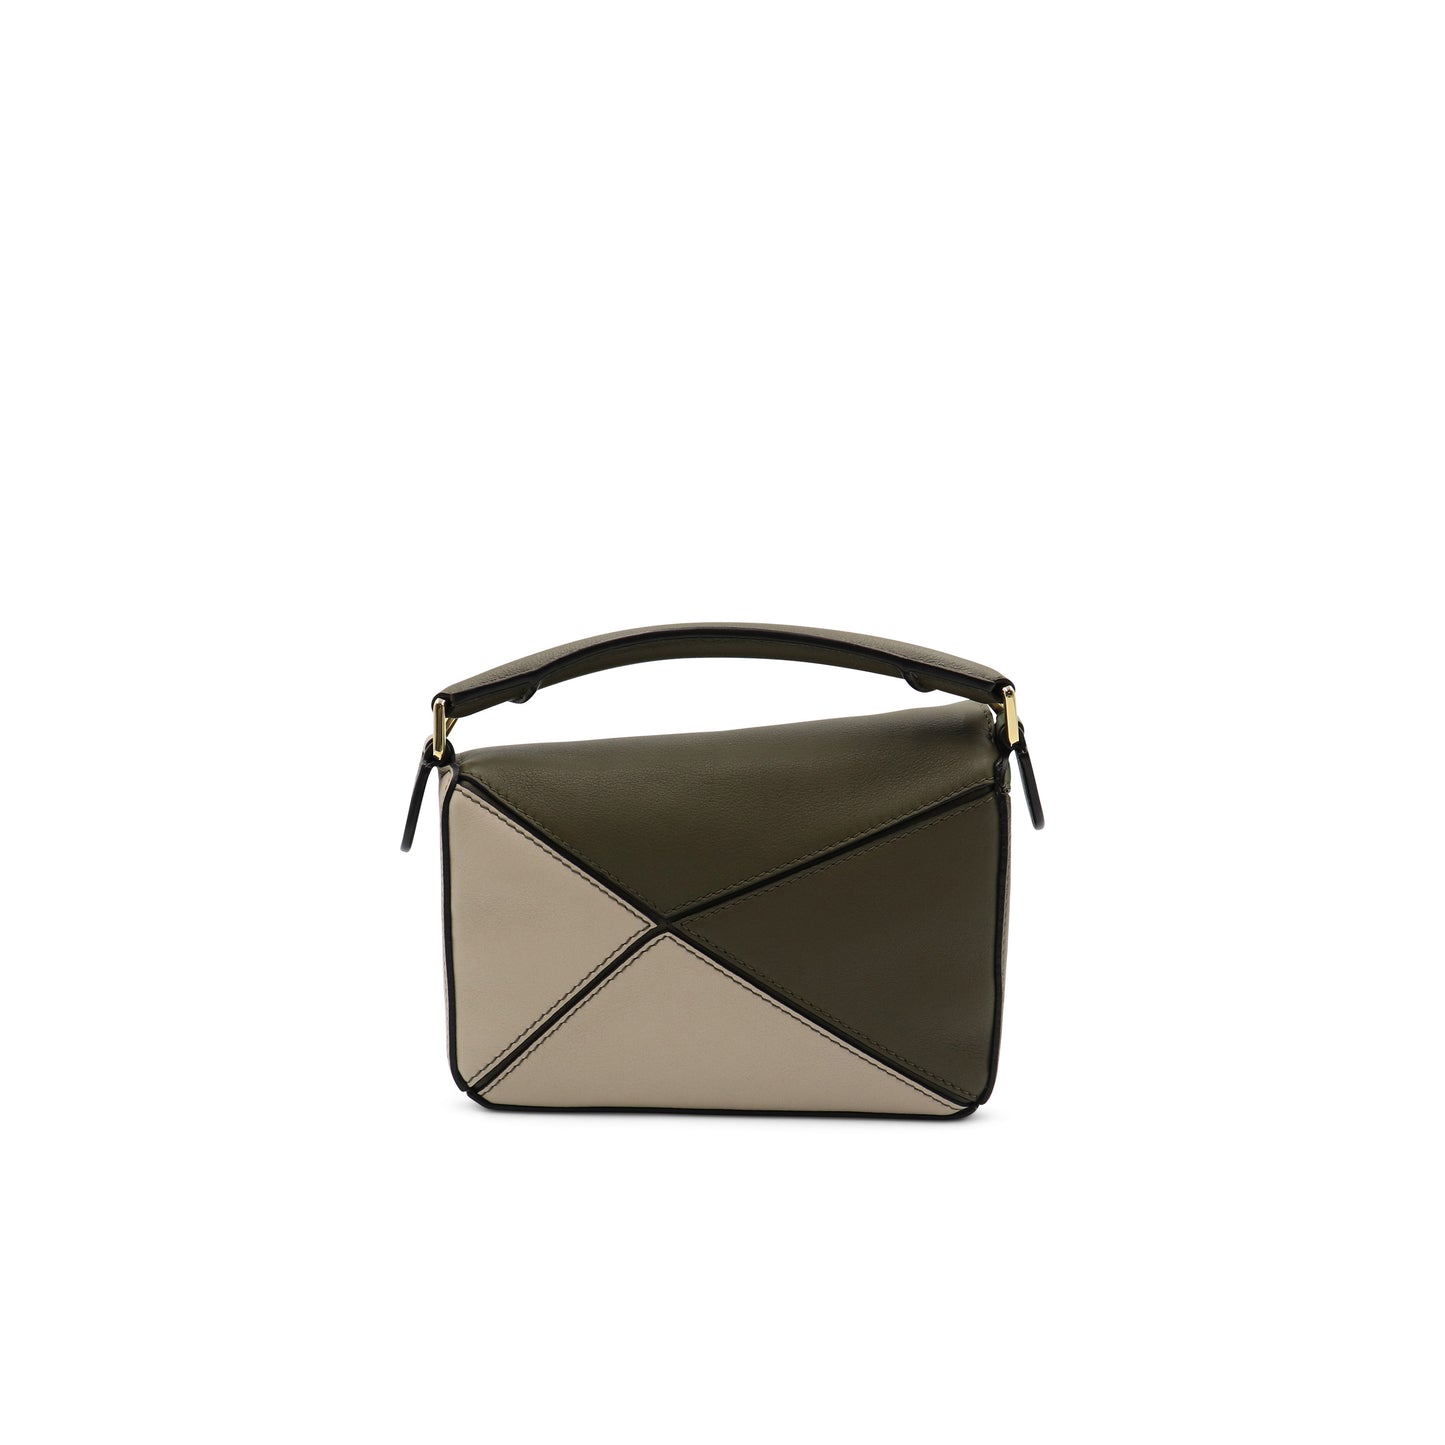 Mini Puzzle Bag in Classic Calfskin in Green/Light Oat